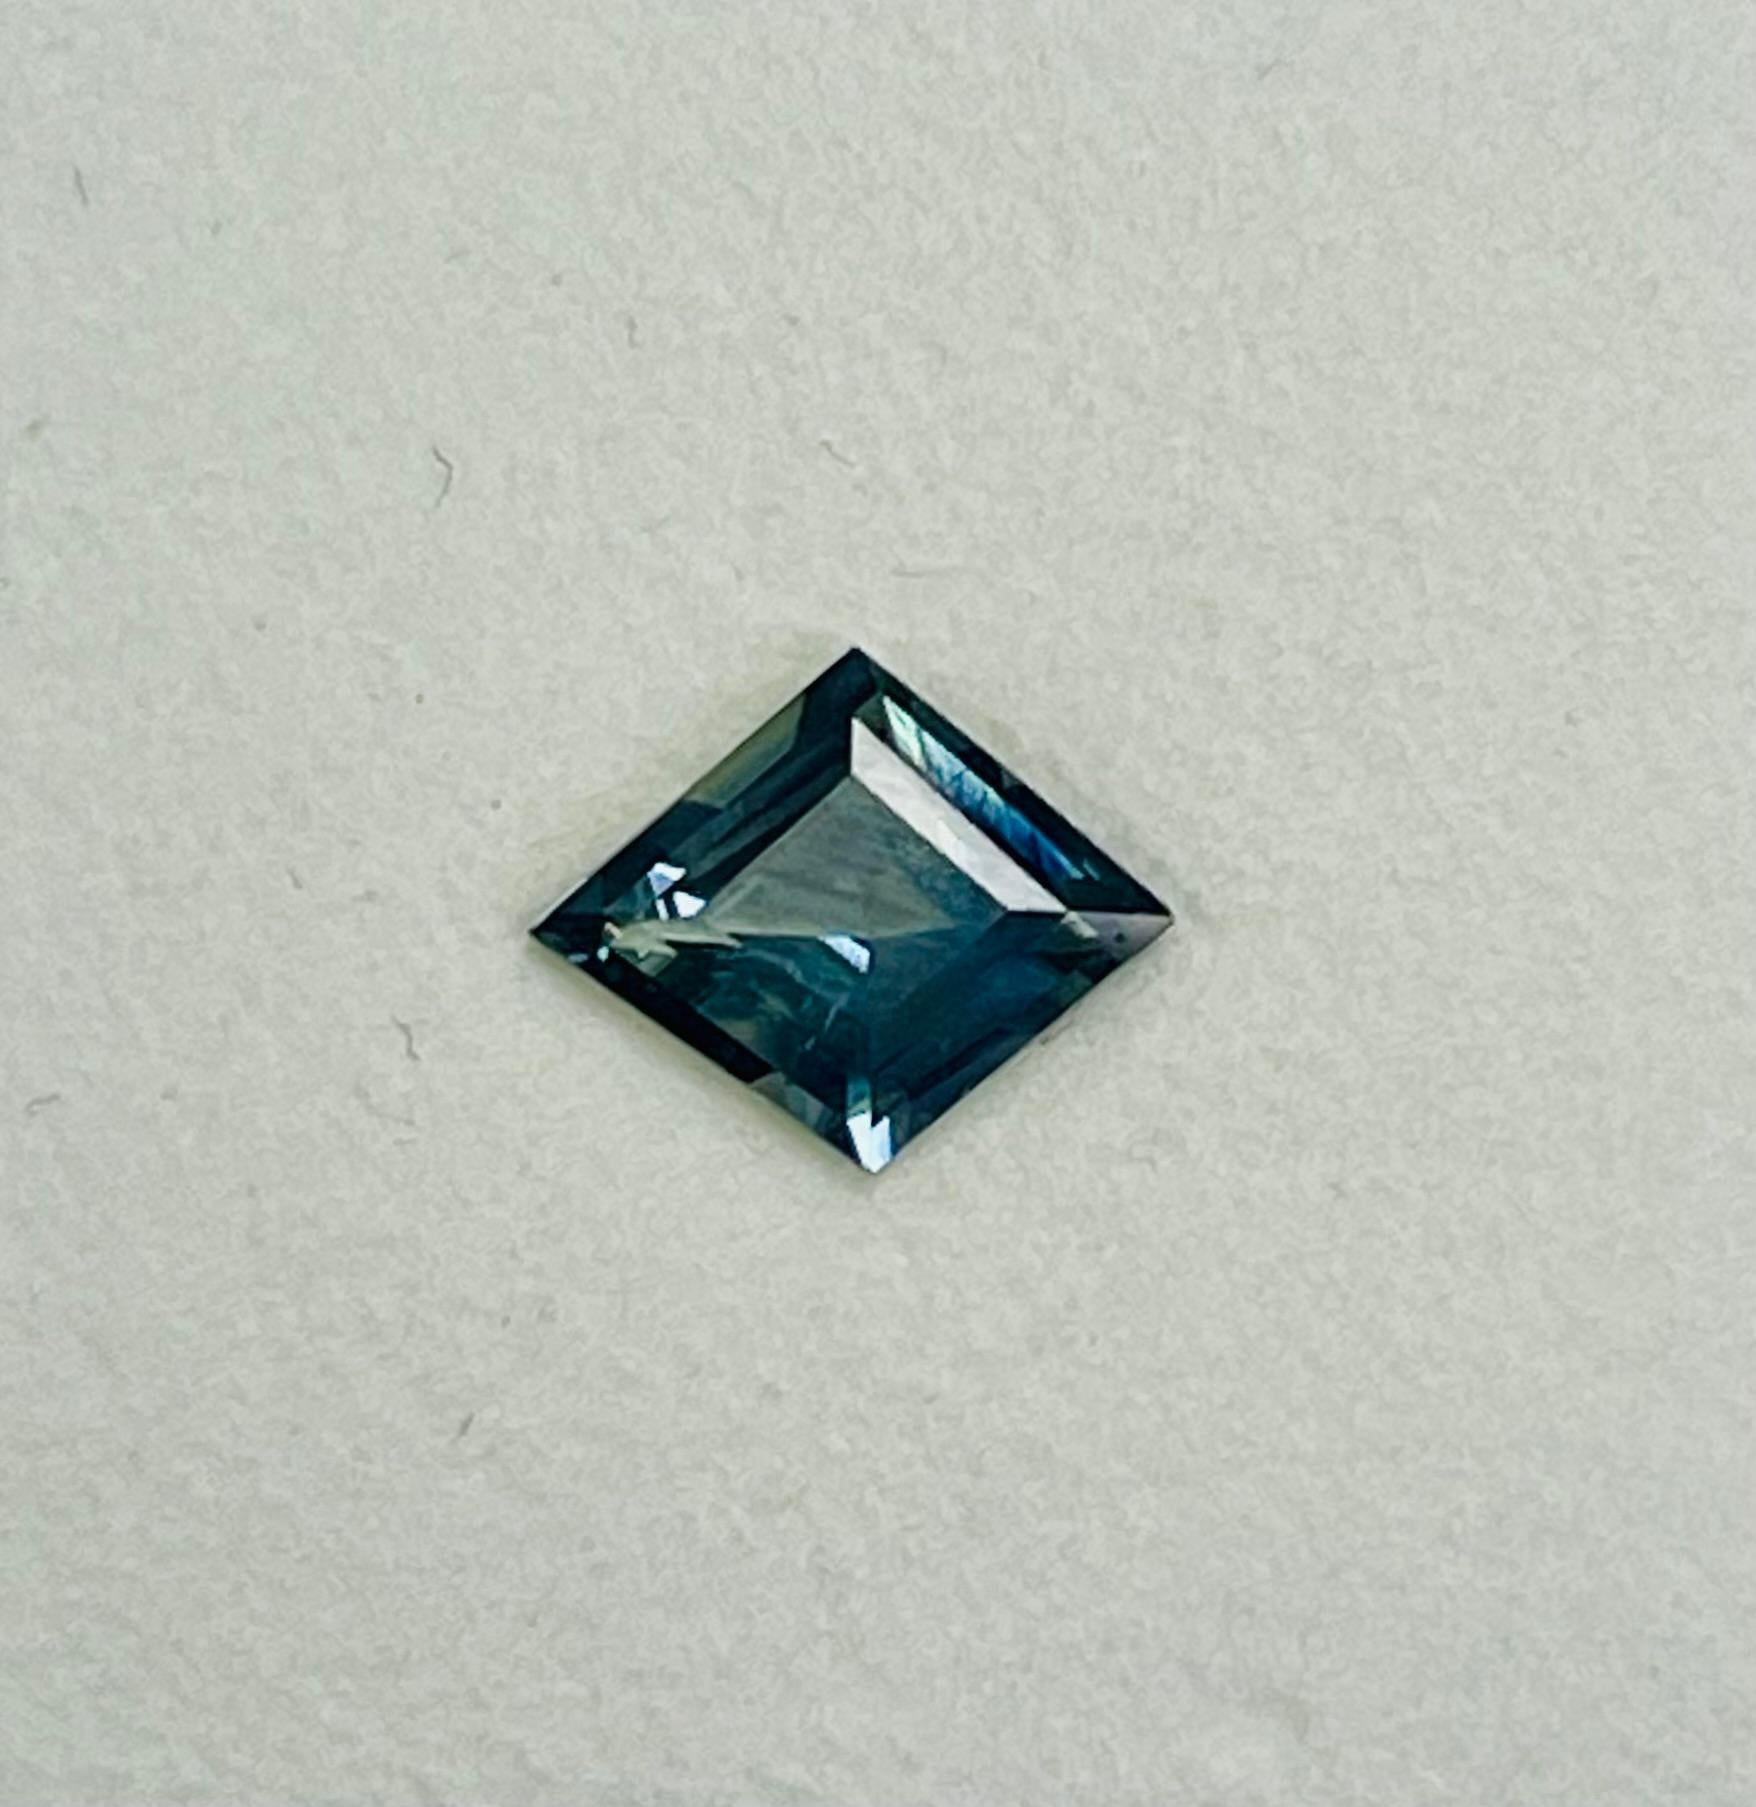 Ce saphir de 2,06 carats en forme de cerf-volant est d'une forme inhabituelle et d'une grande clarté. Il présente également une couleur vert bleuté, que l'on appelle aujourd'hui saphir de couleur sarcelle.